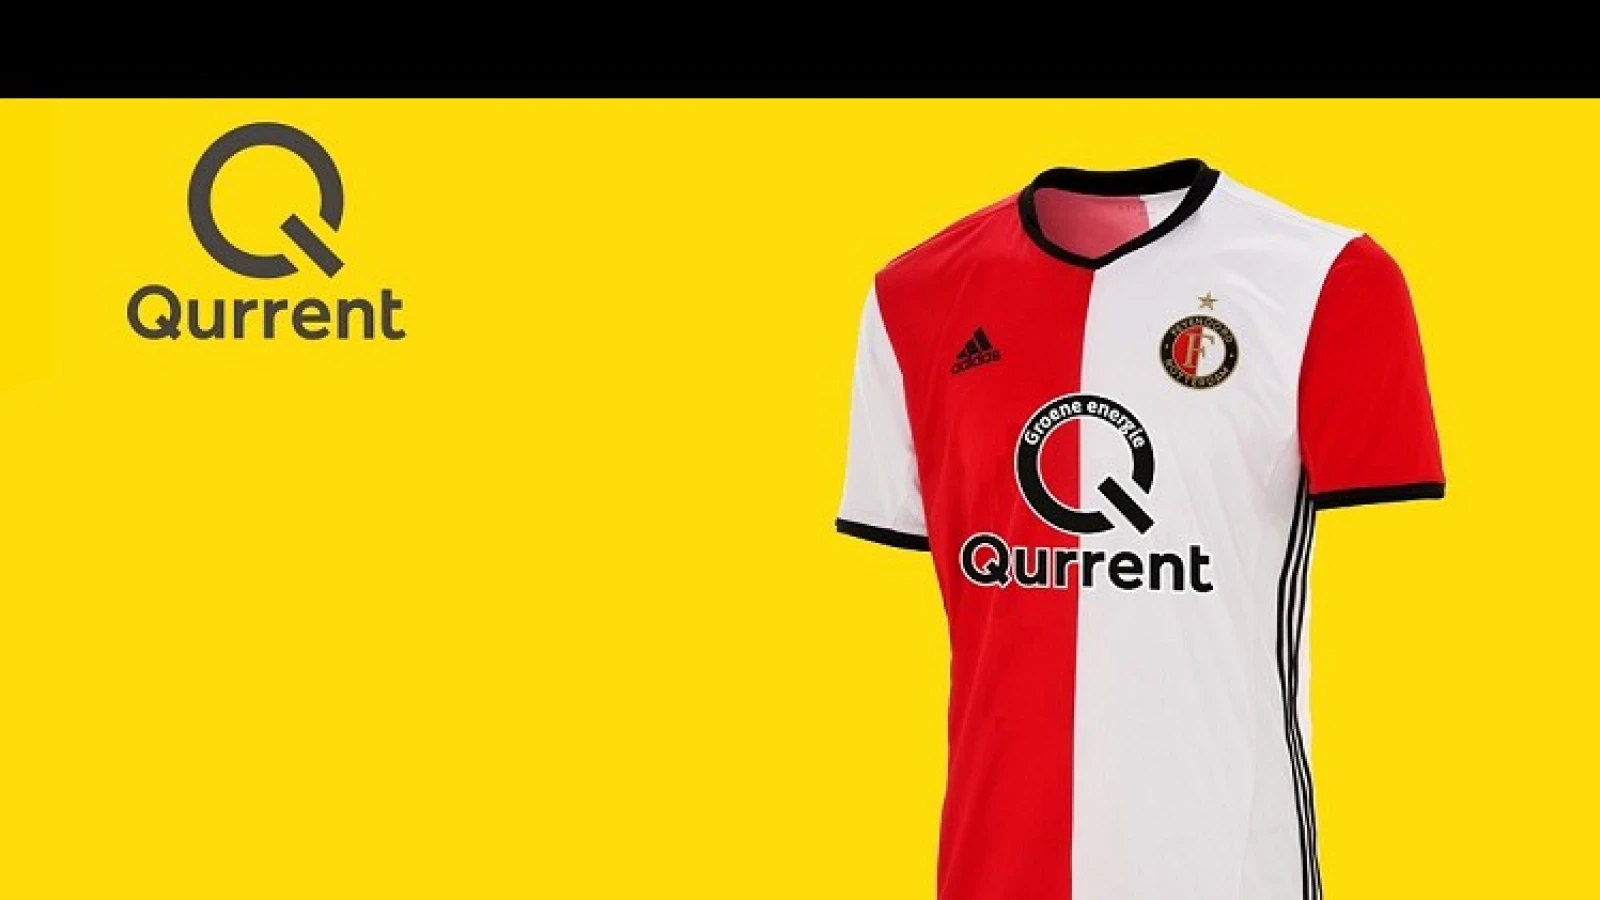 Qurrent komt met speciale actie voor Feyenoord supporters